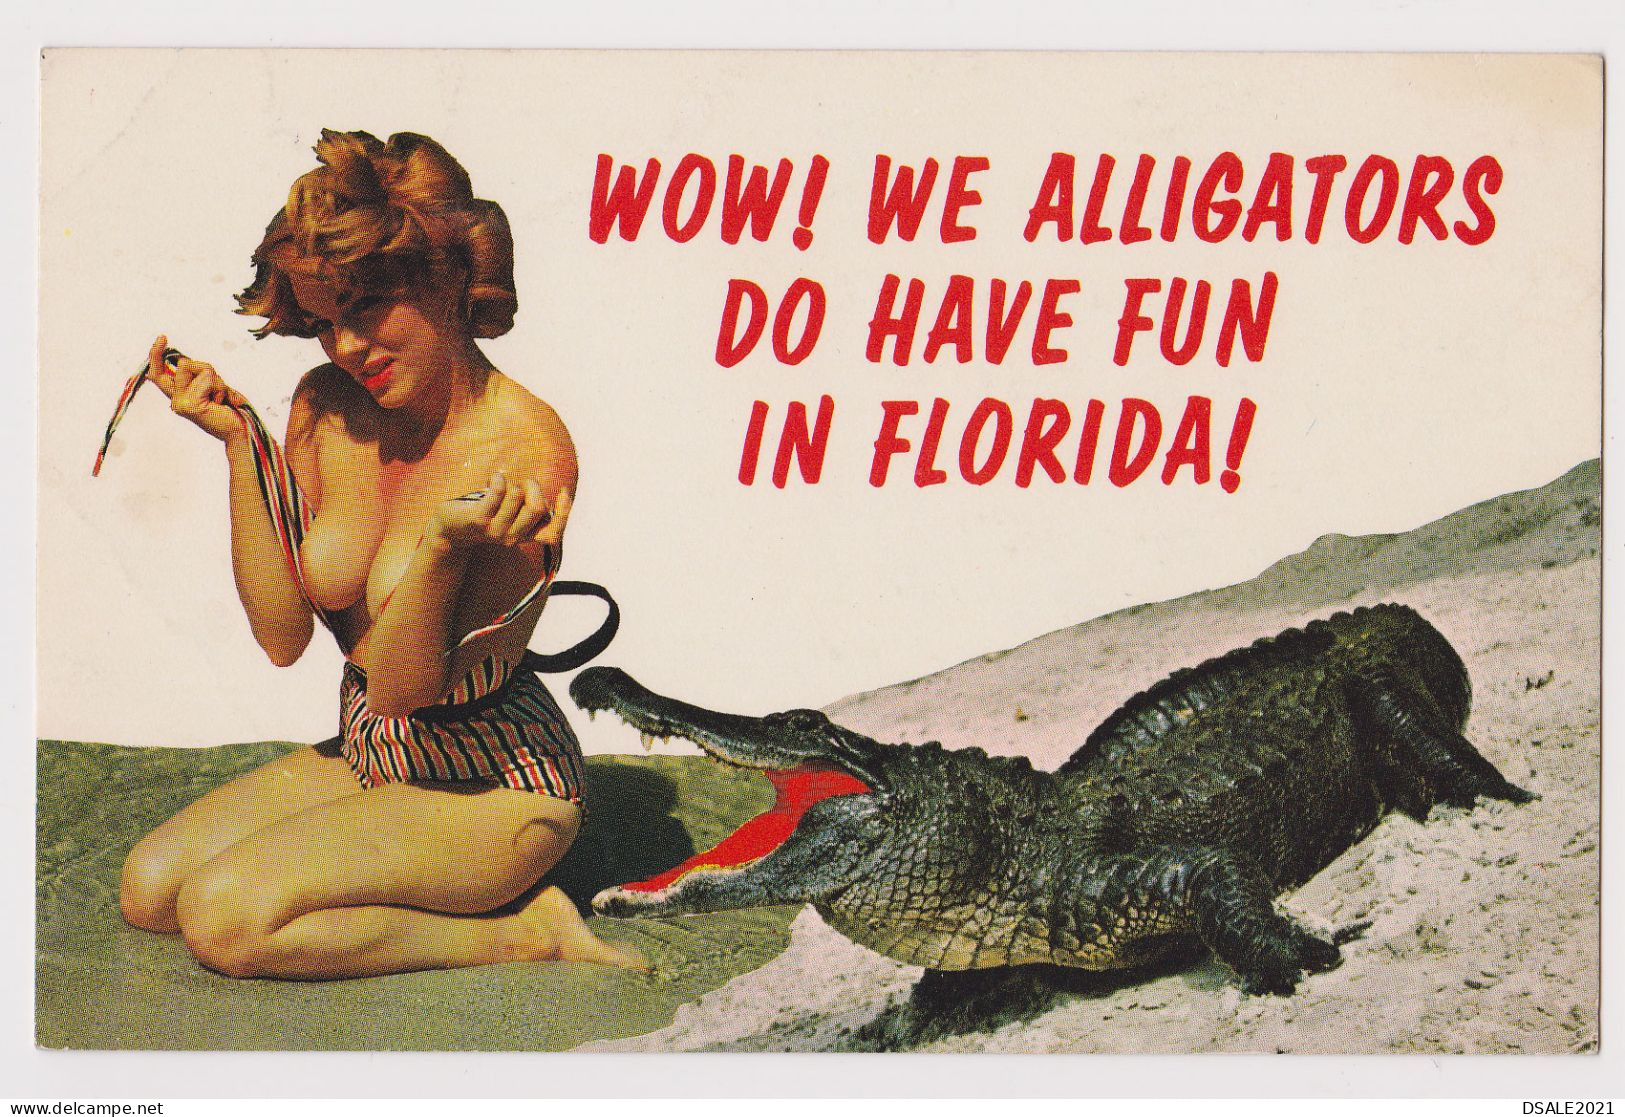 Sexy Young Woman, Lady With Swimwear, Bikini, Pose With Alligator-Florida Fun, Vintage Photo Postcard RPPc Pin-Up /65194 - Pin-Ups